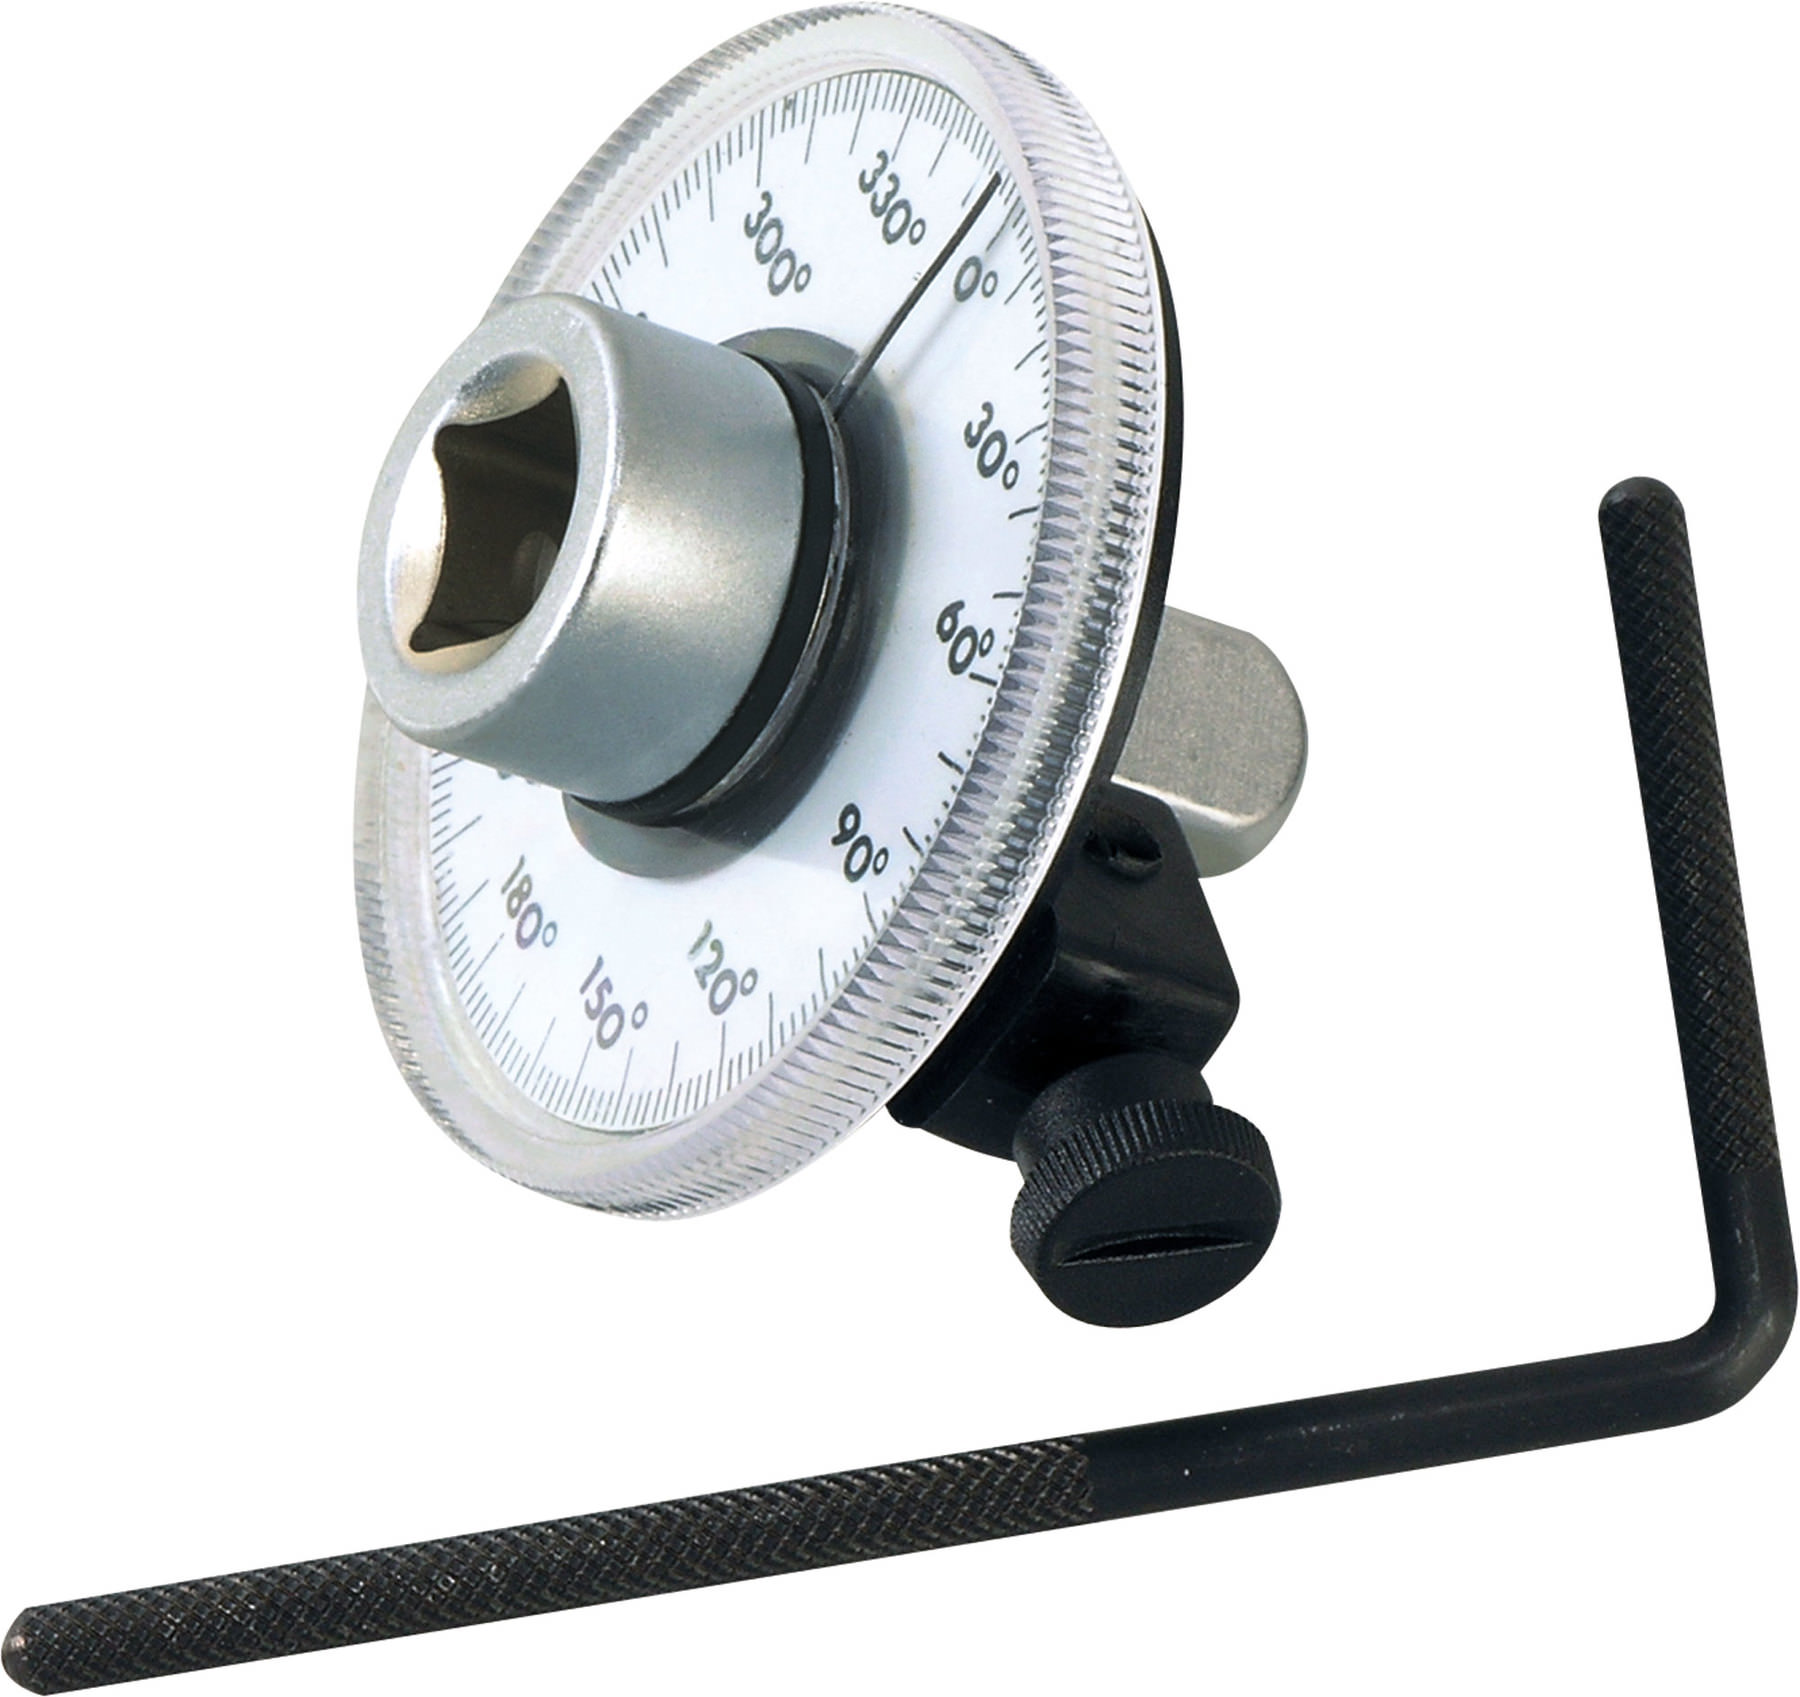 Drehwinkel Messgerät Für 1/2" Drehmomentschlüssel Gradmesser Mit Messuhr 0-360° 